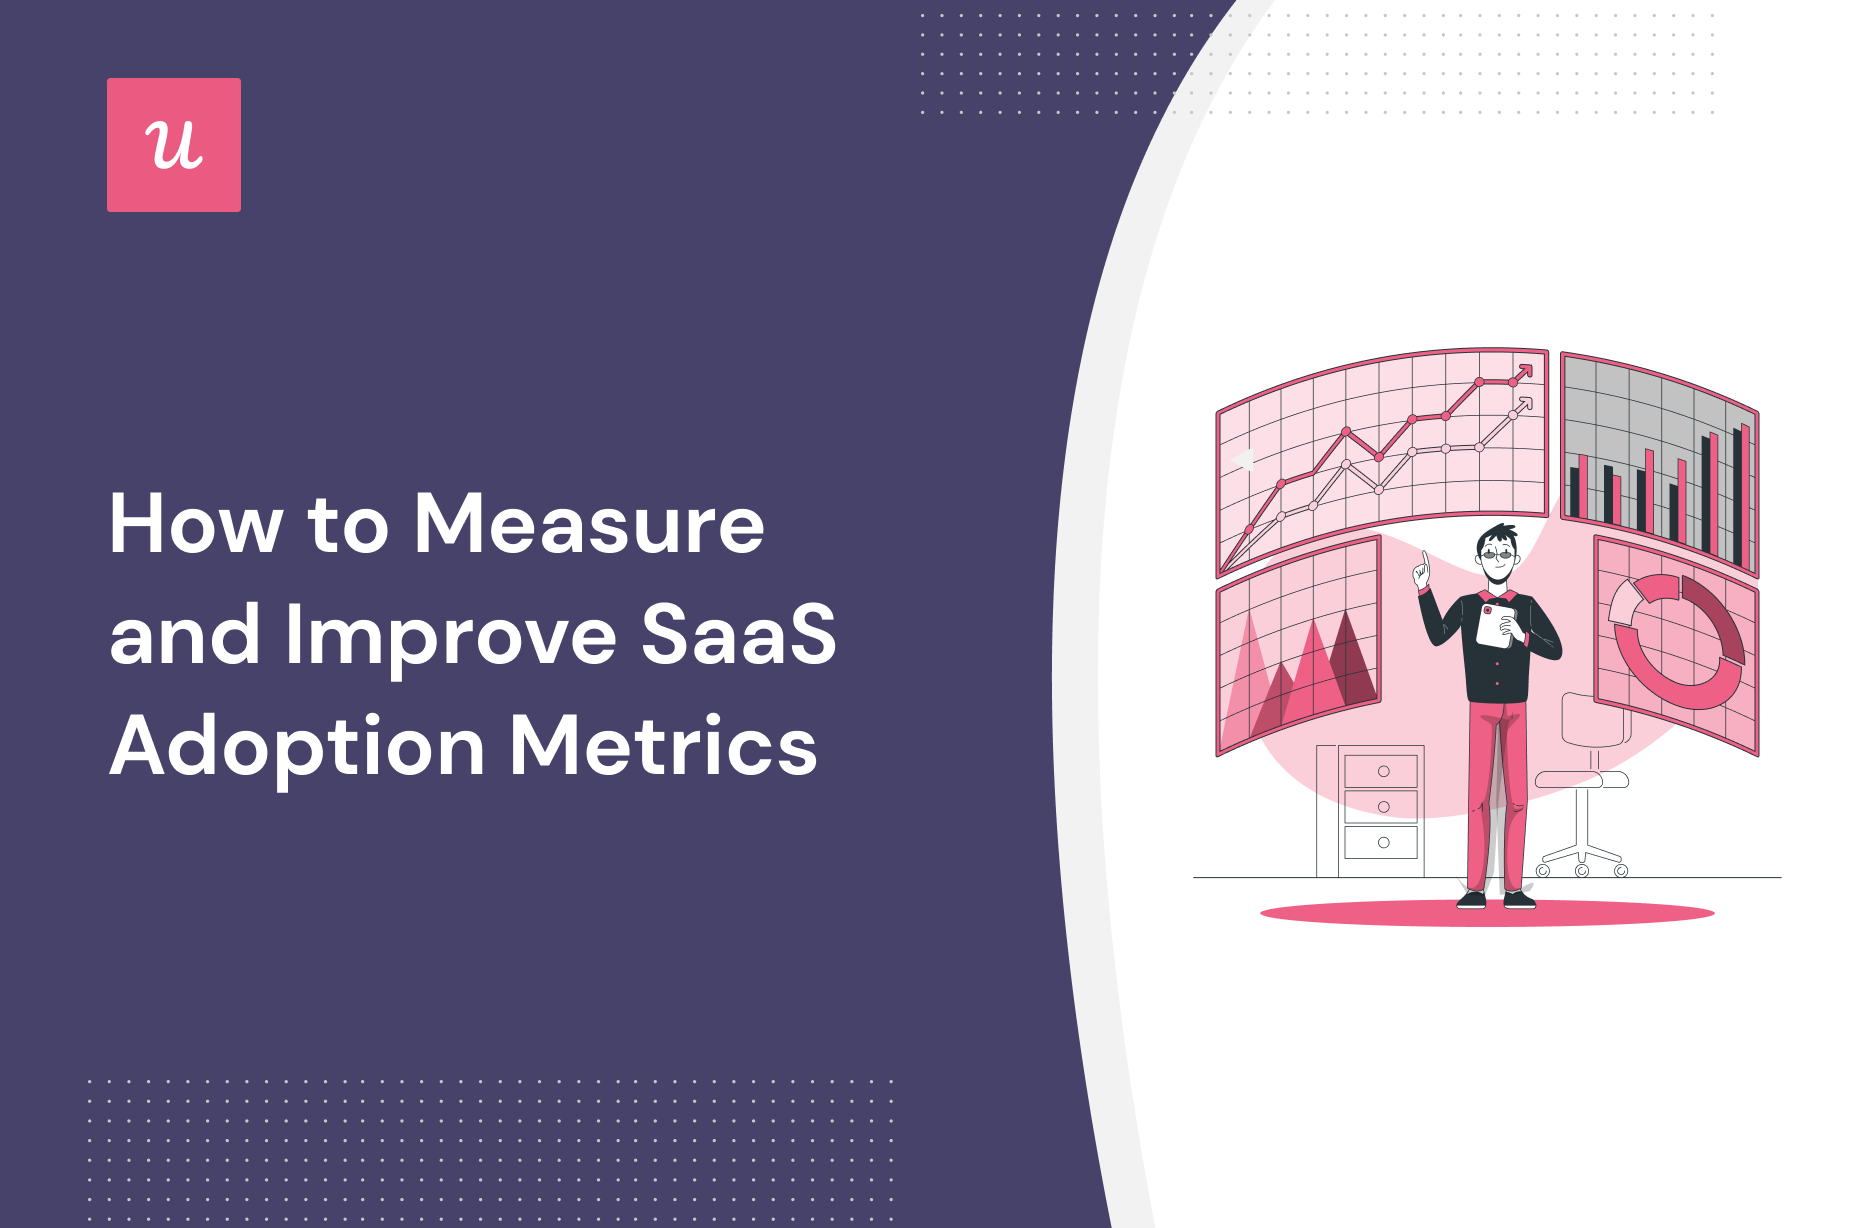 How to Measure and Improve SaaS Adoption Metrics